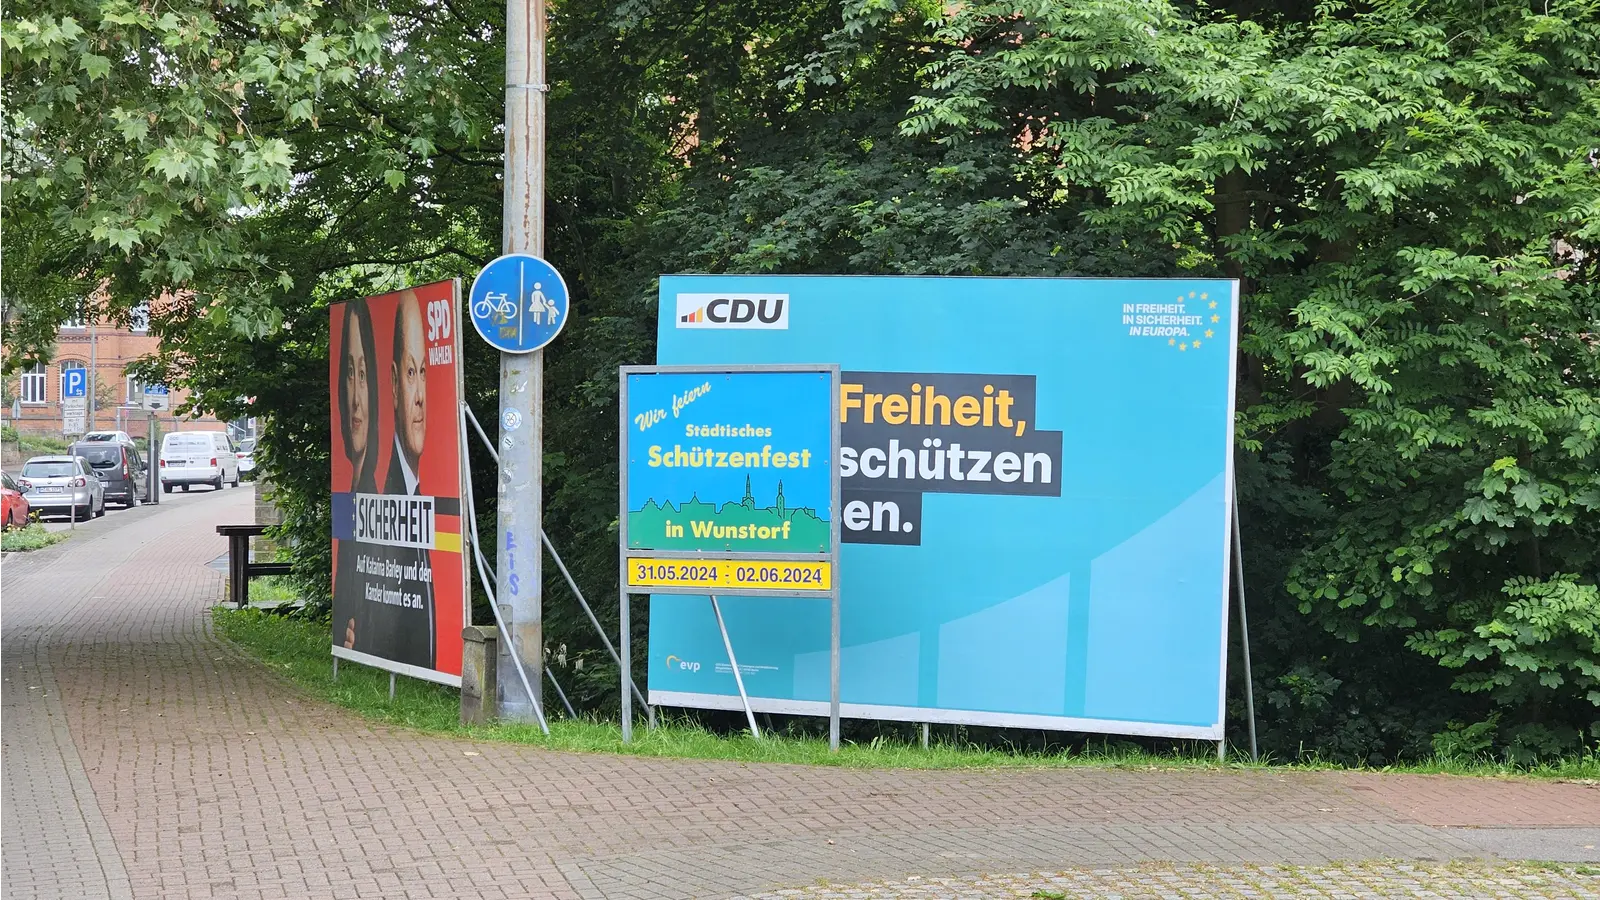 Unglücklich: Die Werbung fürs Schützenfest steht direkt vor einem Wahlplakat. (Foto: tau)